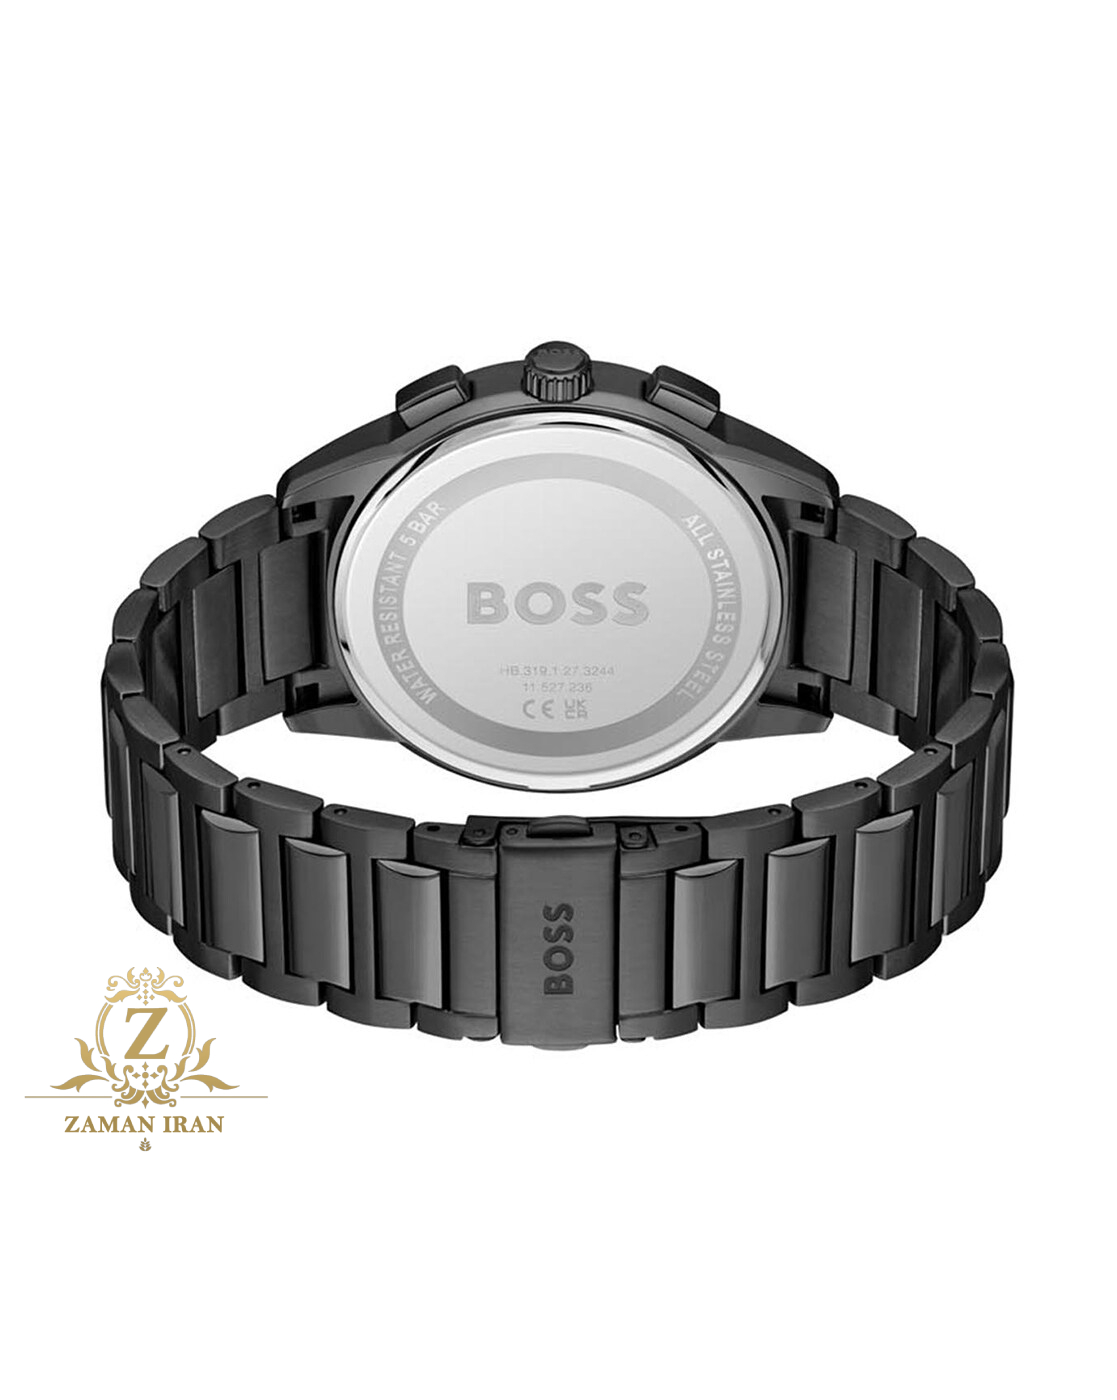 ساعت مچی مردانه هوگو بوس Hugo Boss اورجینال مدل 1513929